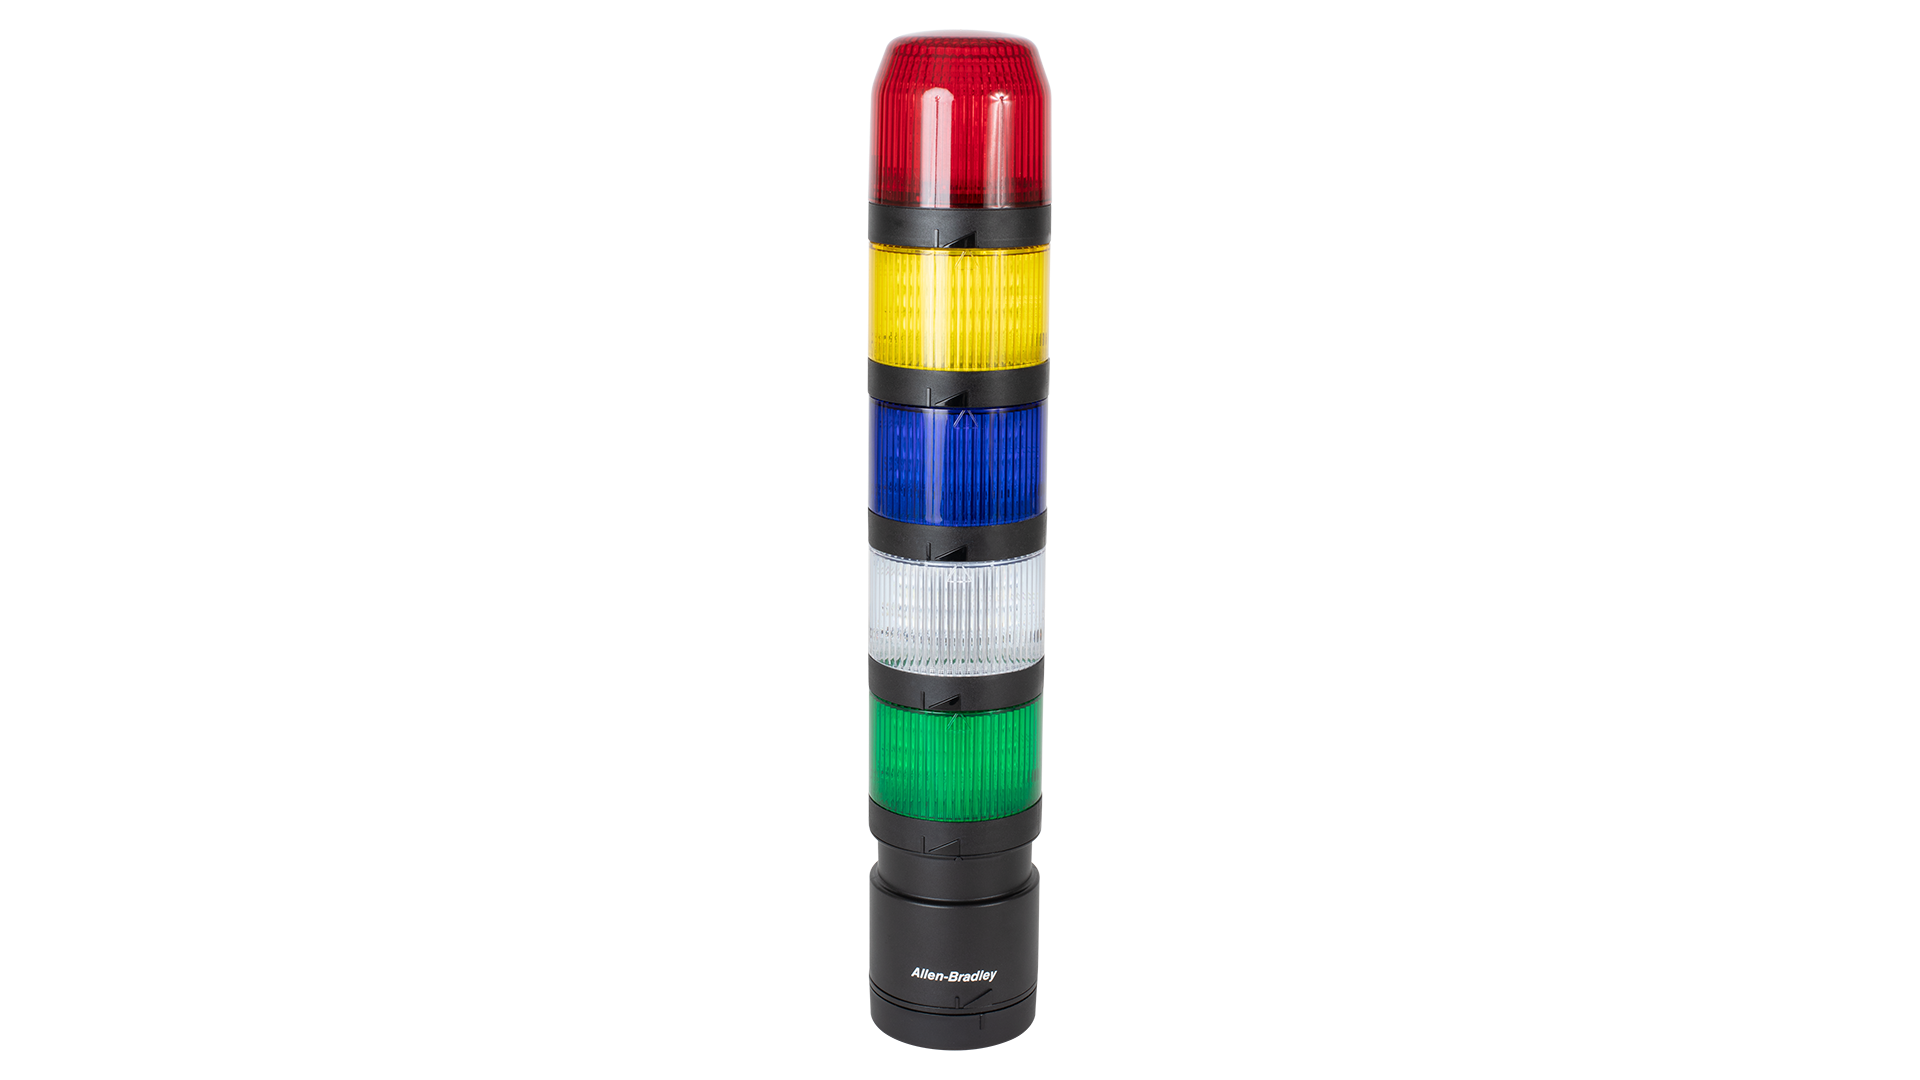 上から下へのIO-リンクスタックライト - 黒のトランスデューササウンドモジュール、赤、アンバー、緑の点灯していないライトモジュール、黒の垂直取付け基底